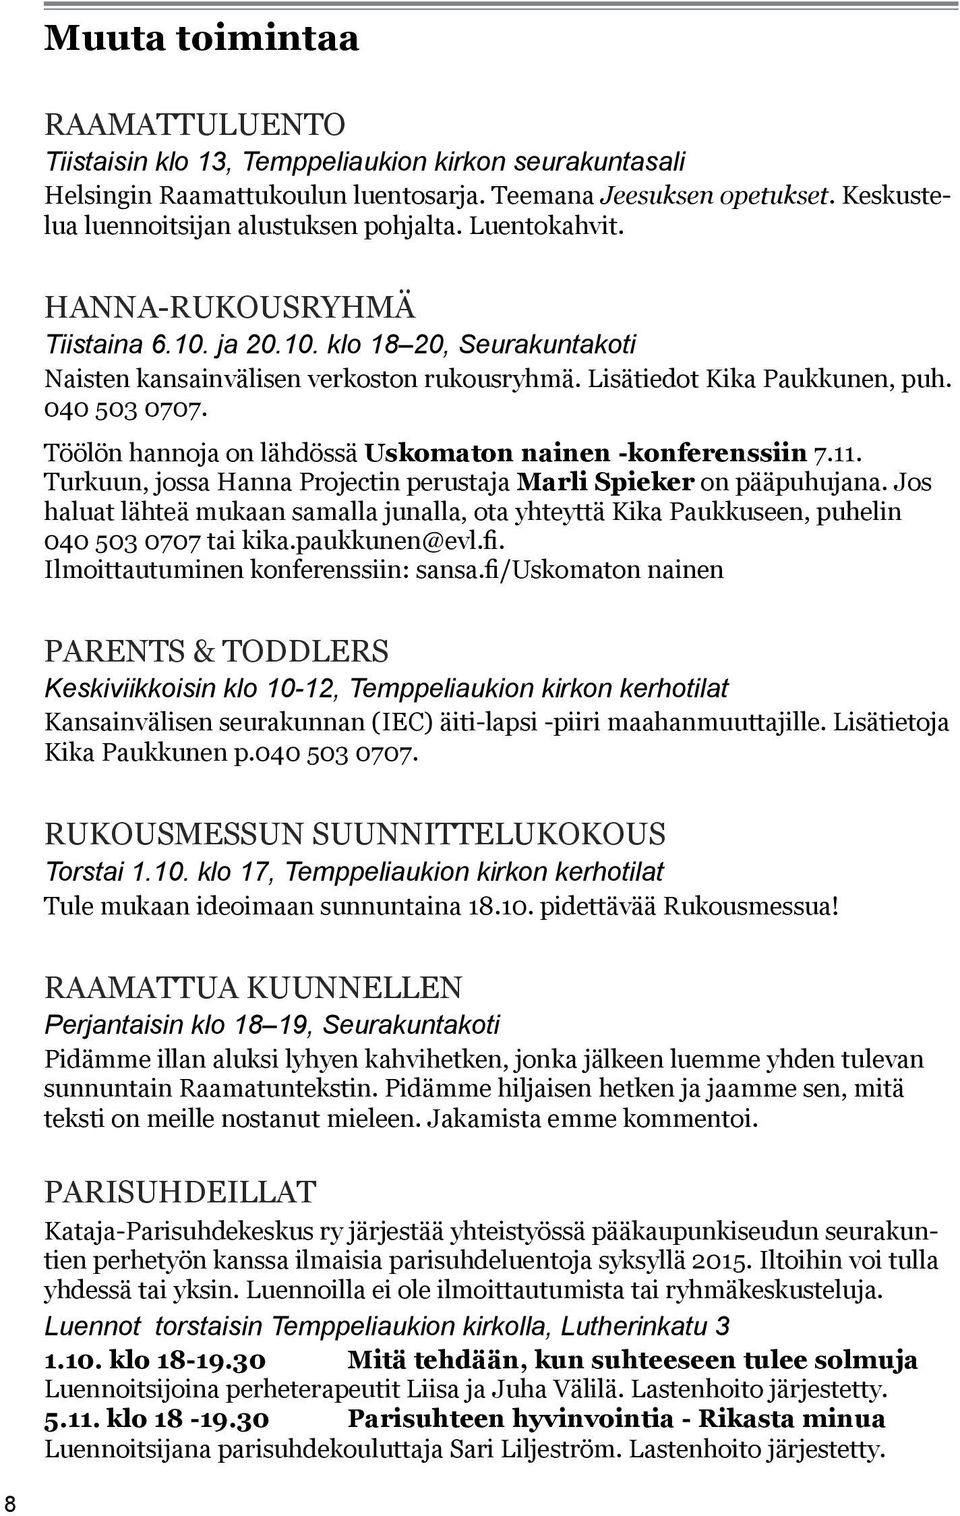 Töölön hannoja on lähdössä Uskomaton nainen -konferenssiin 7.11. Turkuun, jossa Hanna Projectin perustaja Marli Spieker on pääpuhujana.